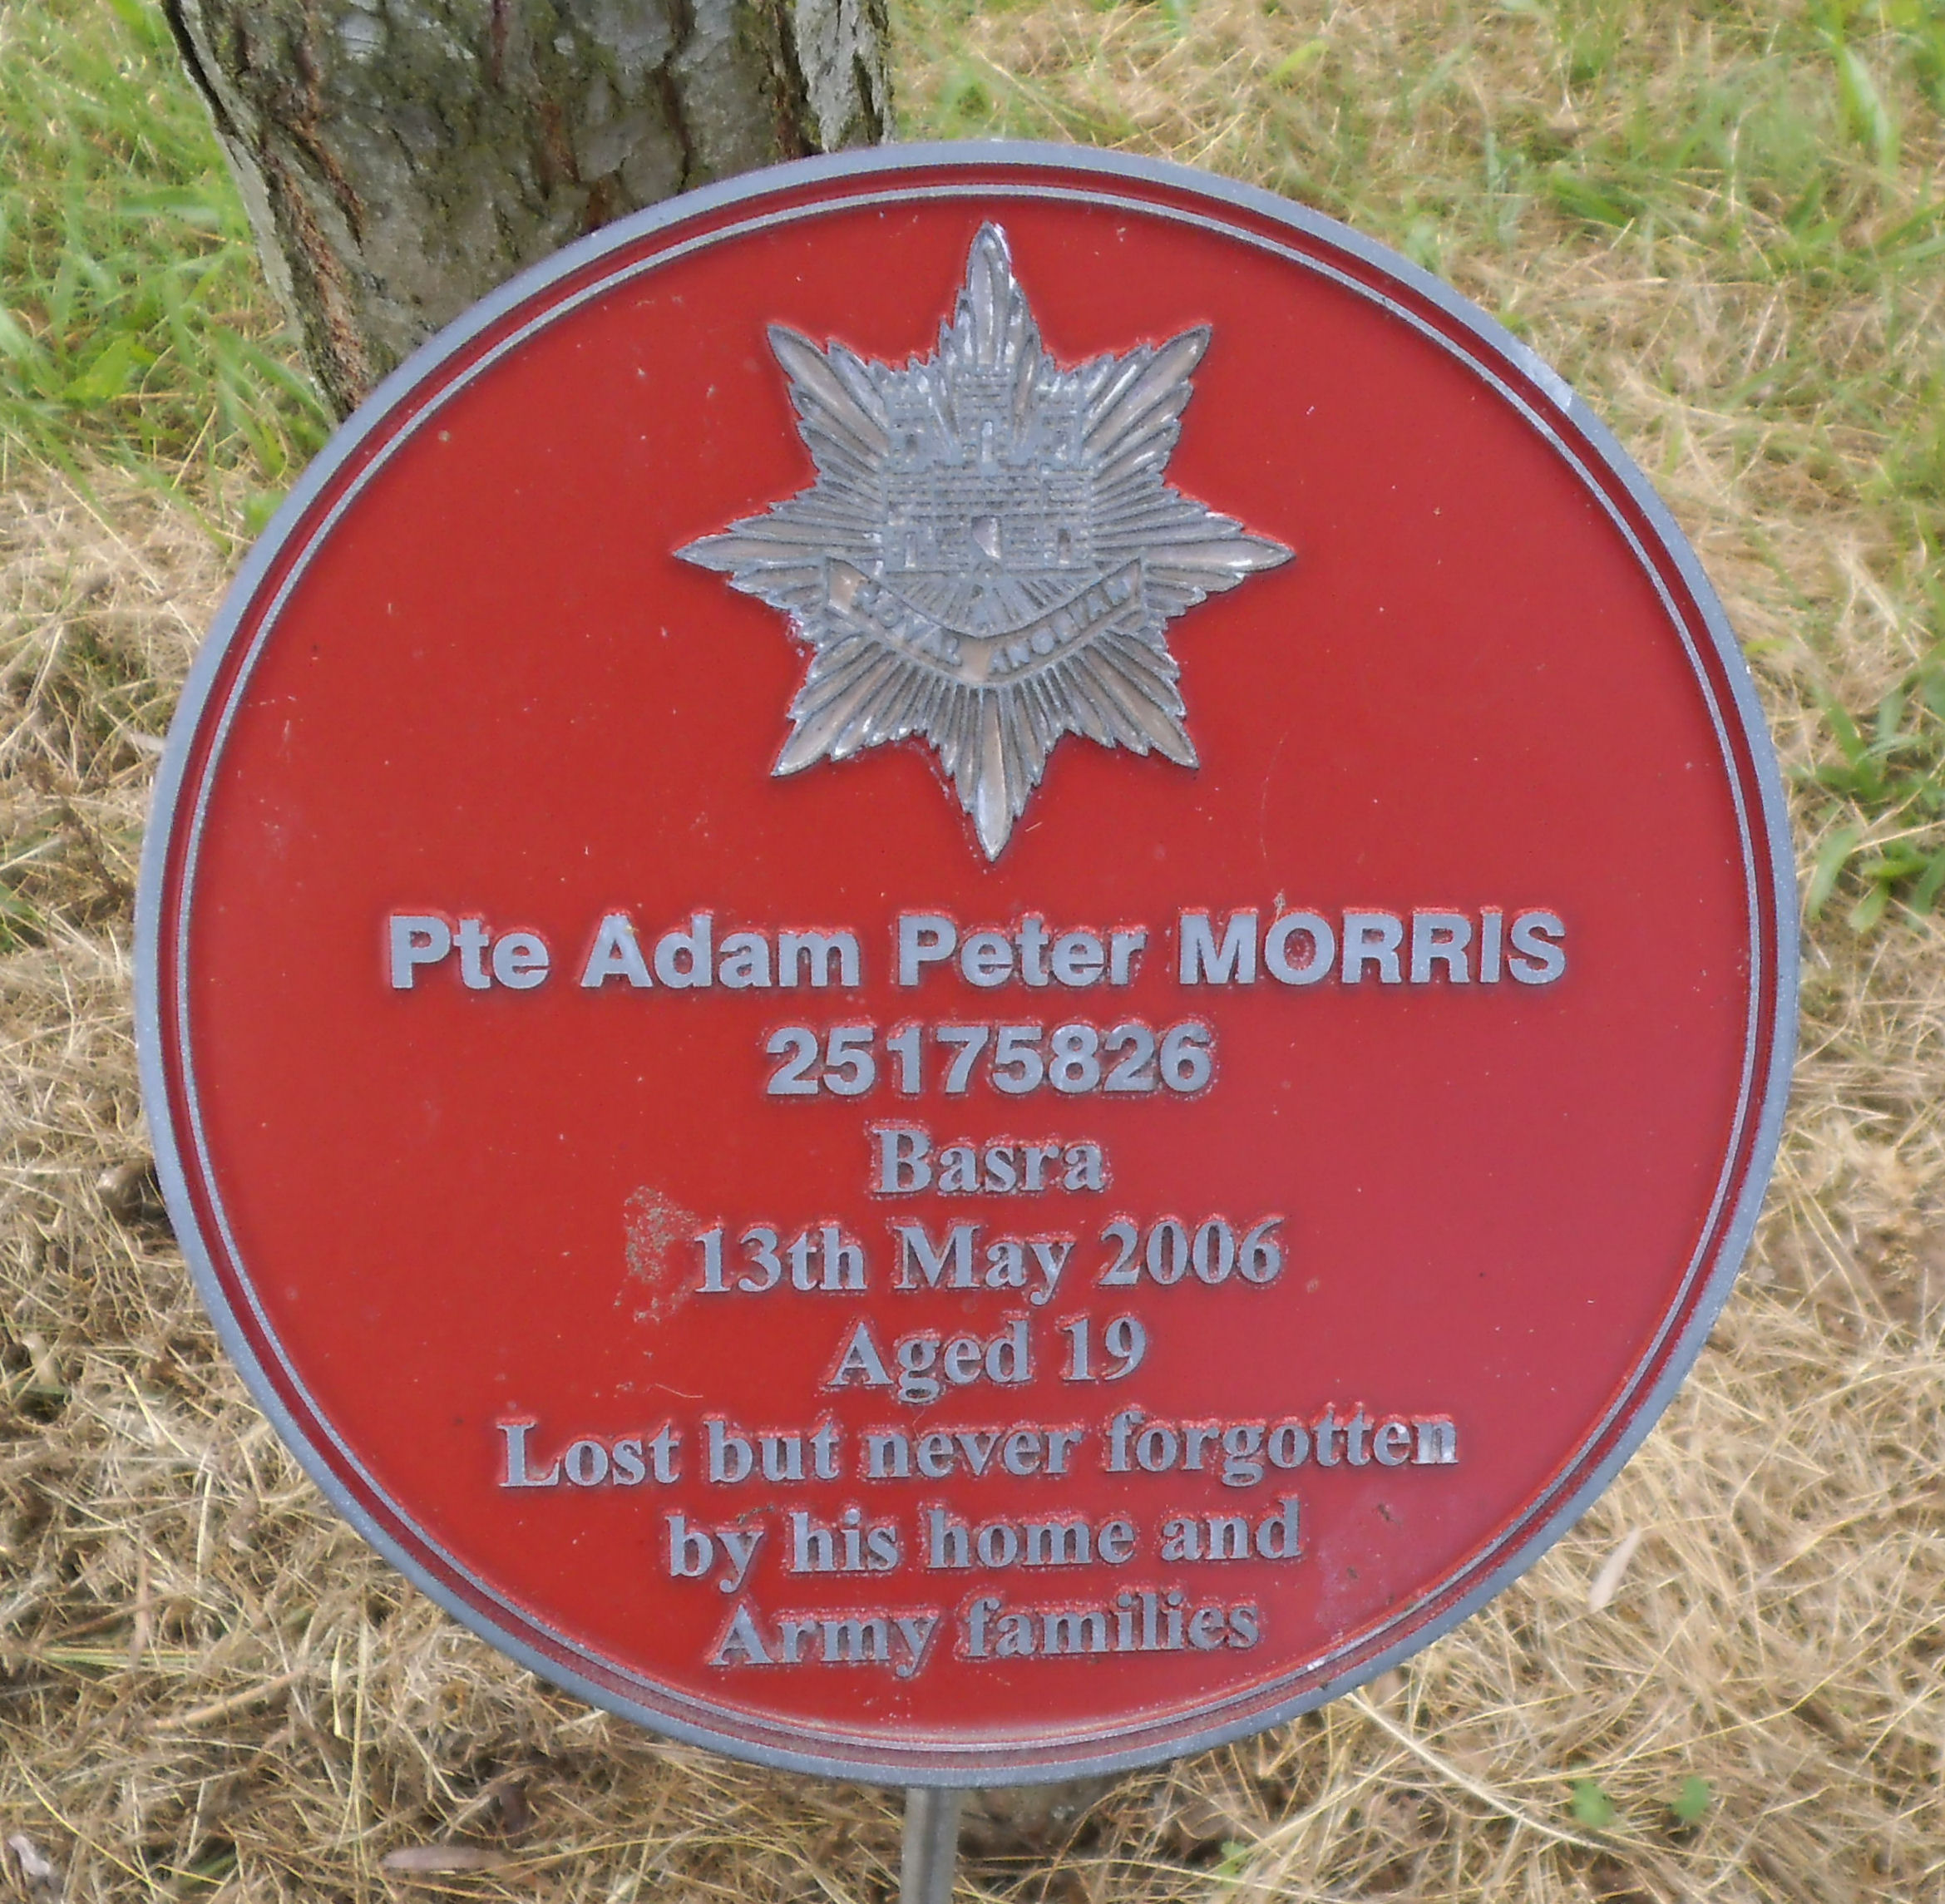 Adam Peter MORRIS